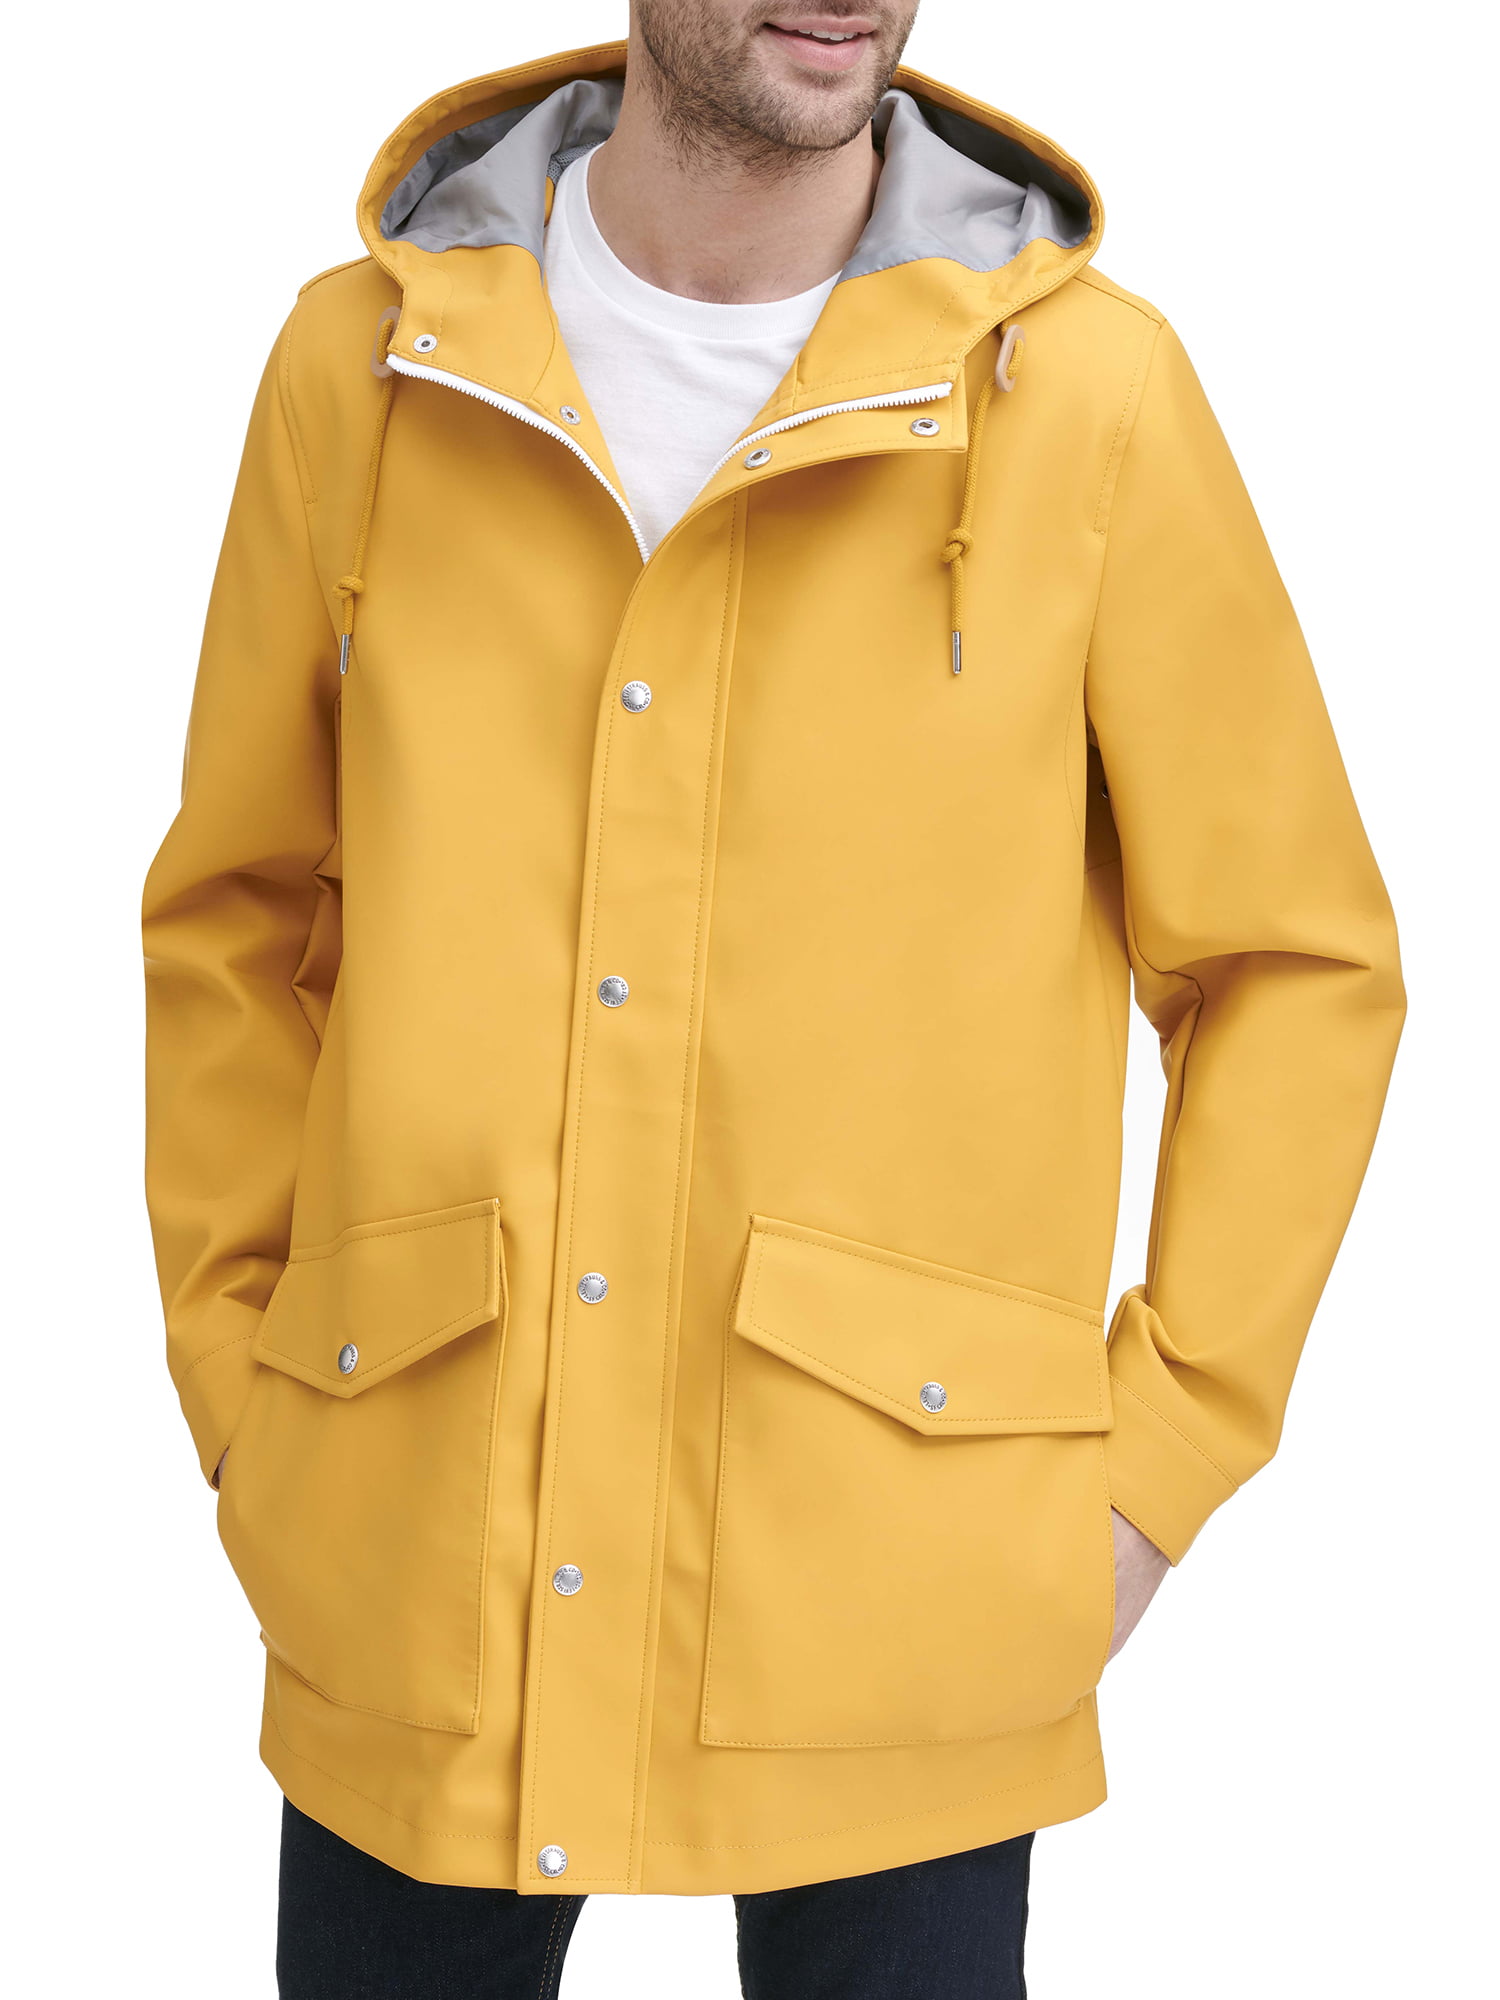 levis clear raincoat